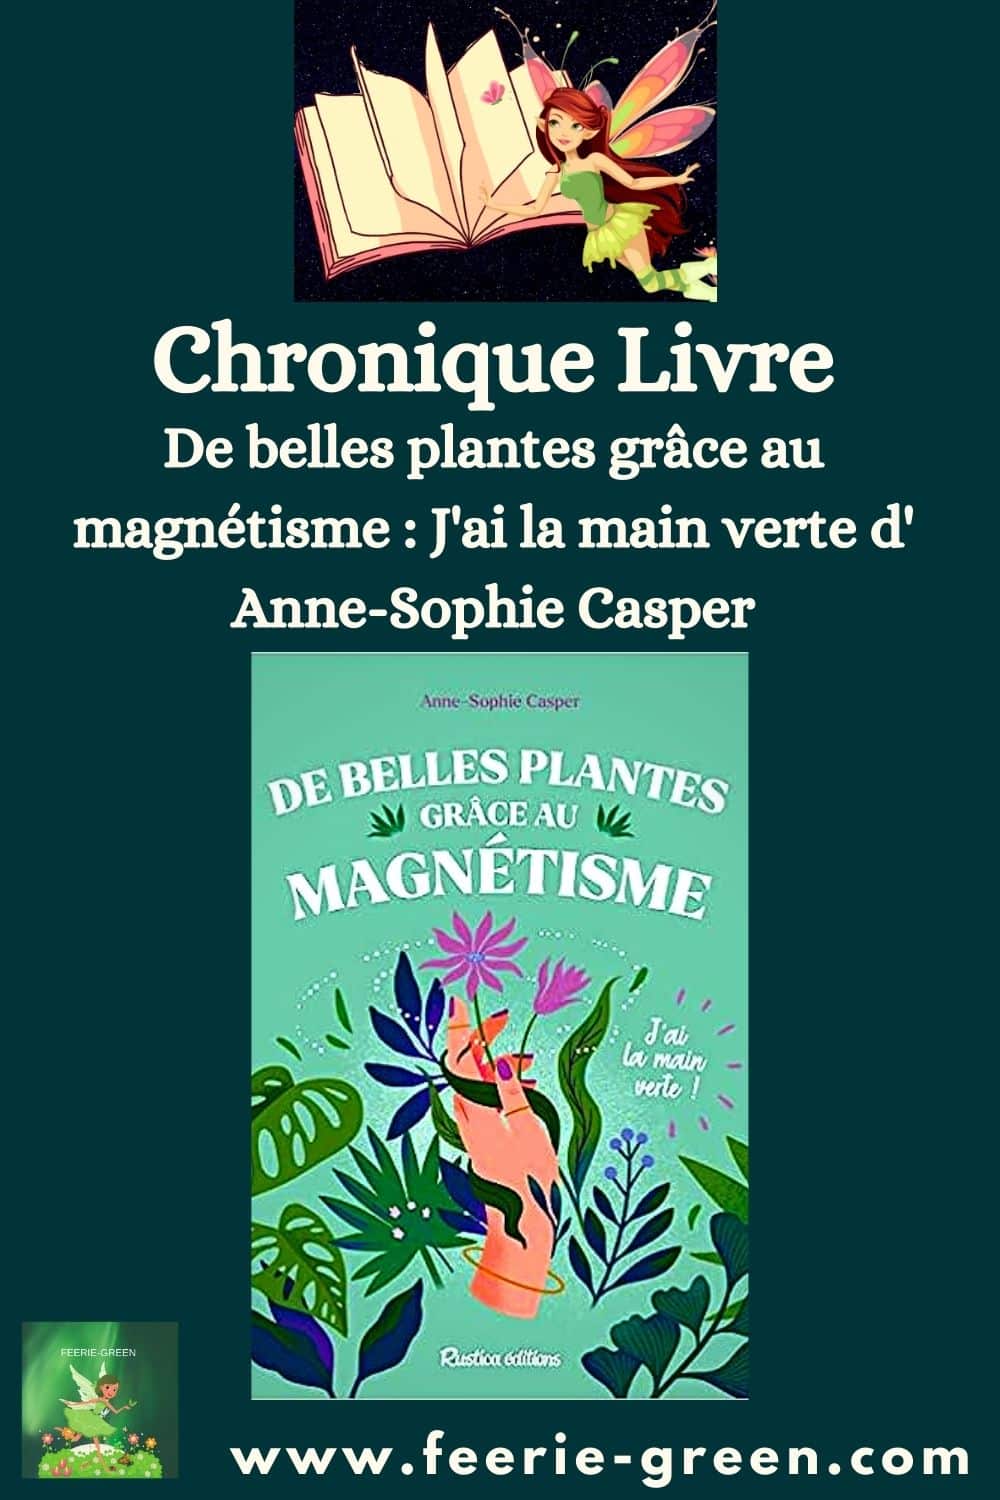 De belles plantes grâce au magnétisme J'ai la main verte d' Anne-Sophie Casper - pinterest